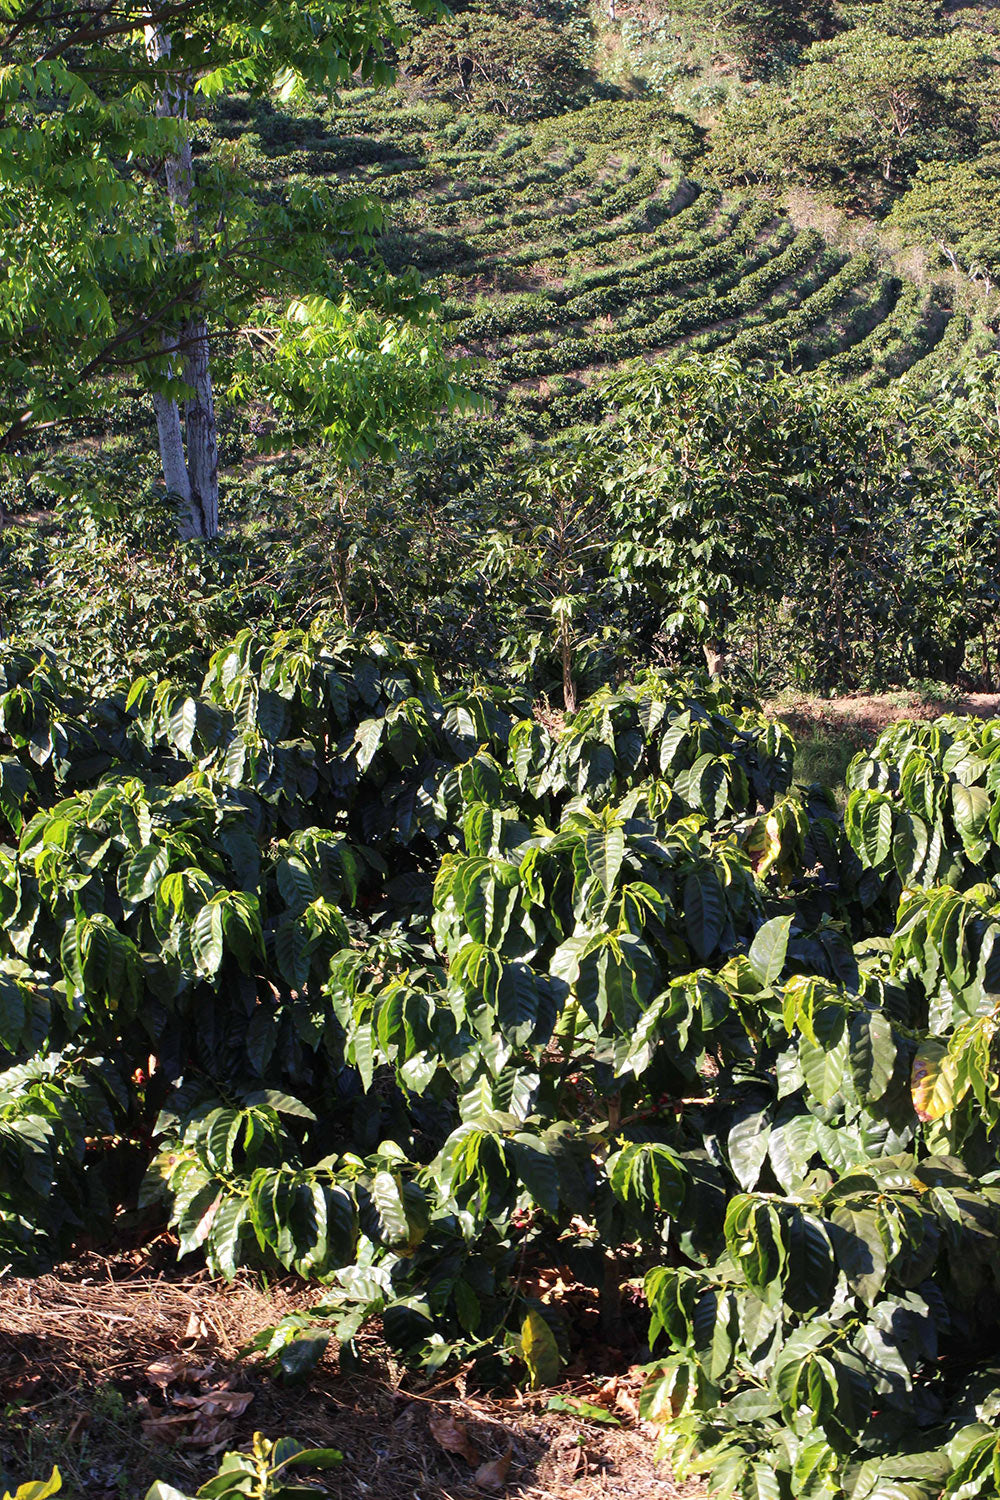 Pacamara coffee at Finca El Manzano planted without shade trees.